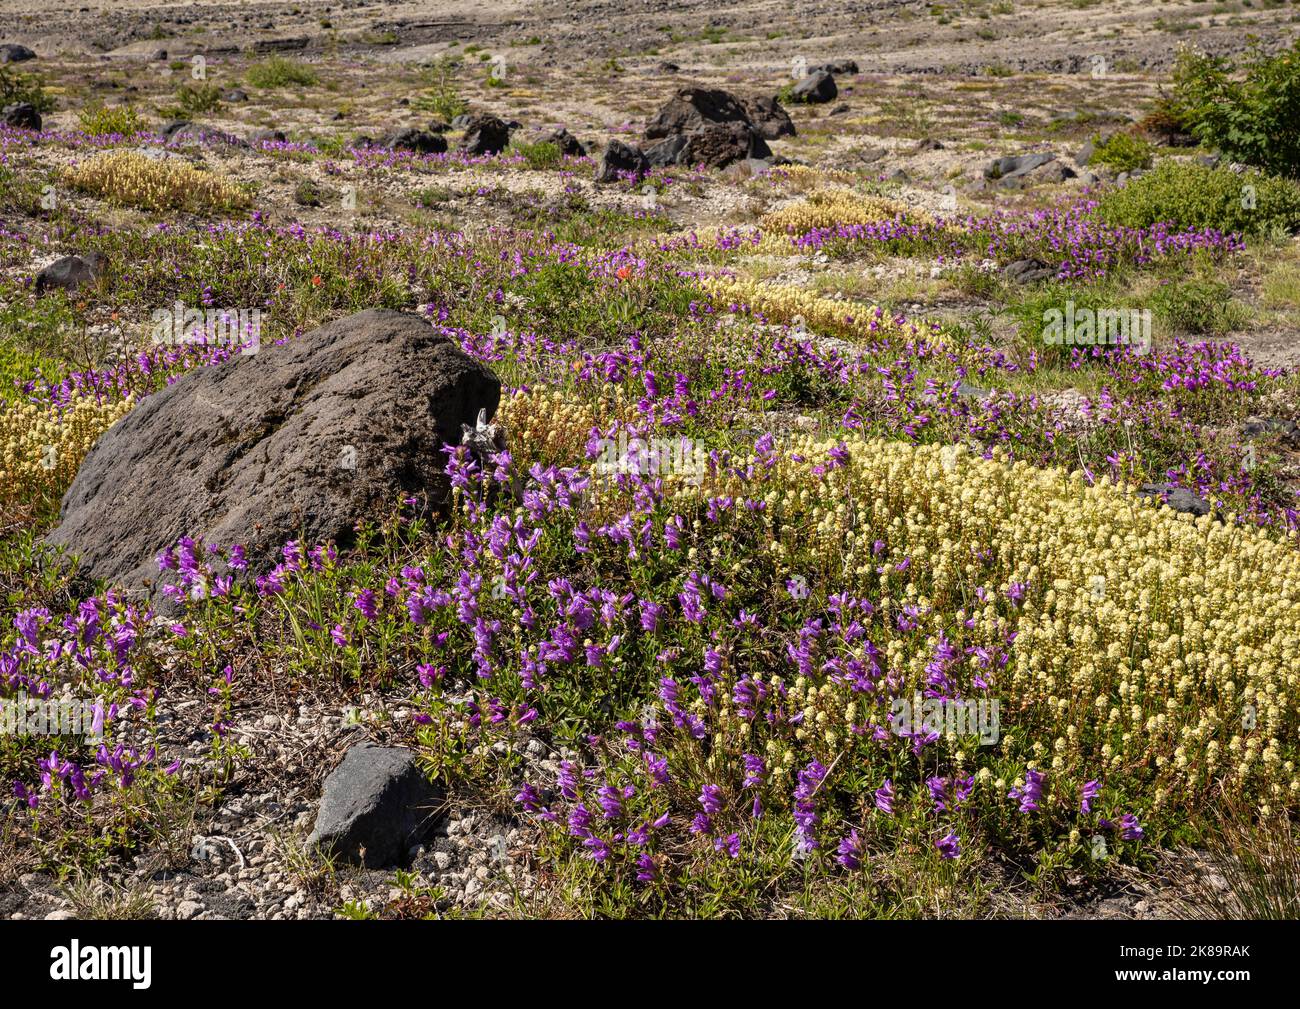 WA22492-00...WASHINGTON - Matten aus violettem Penstemon gelbem Partridgefoot auf der Ebene Abrahams im Mount St. Helens National Volcanic Monument. Stockfoto